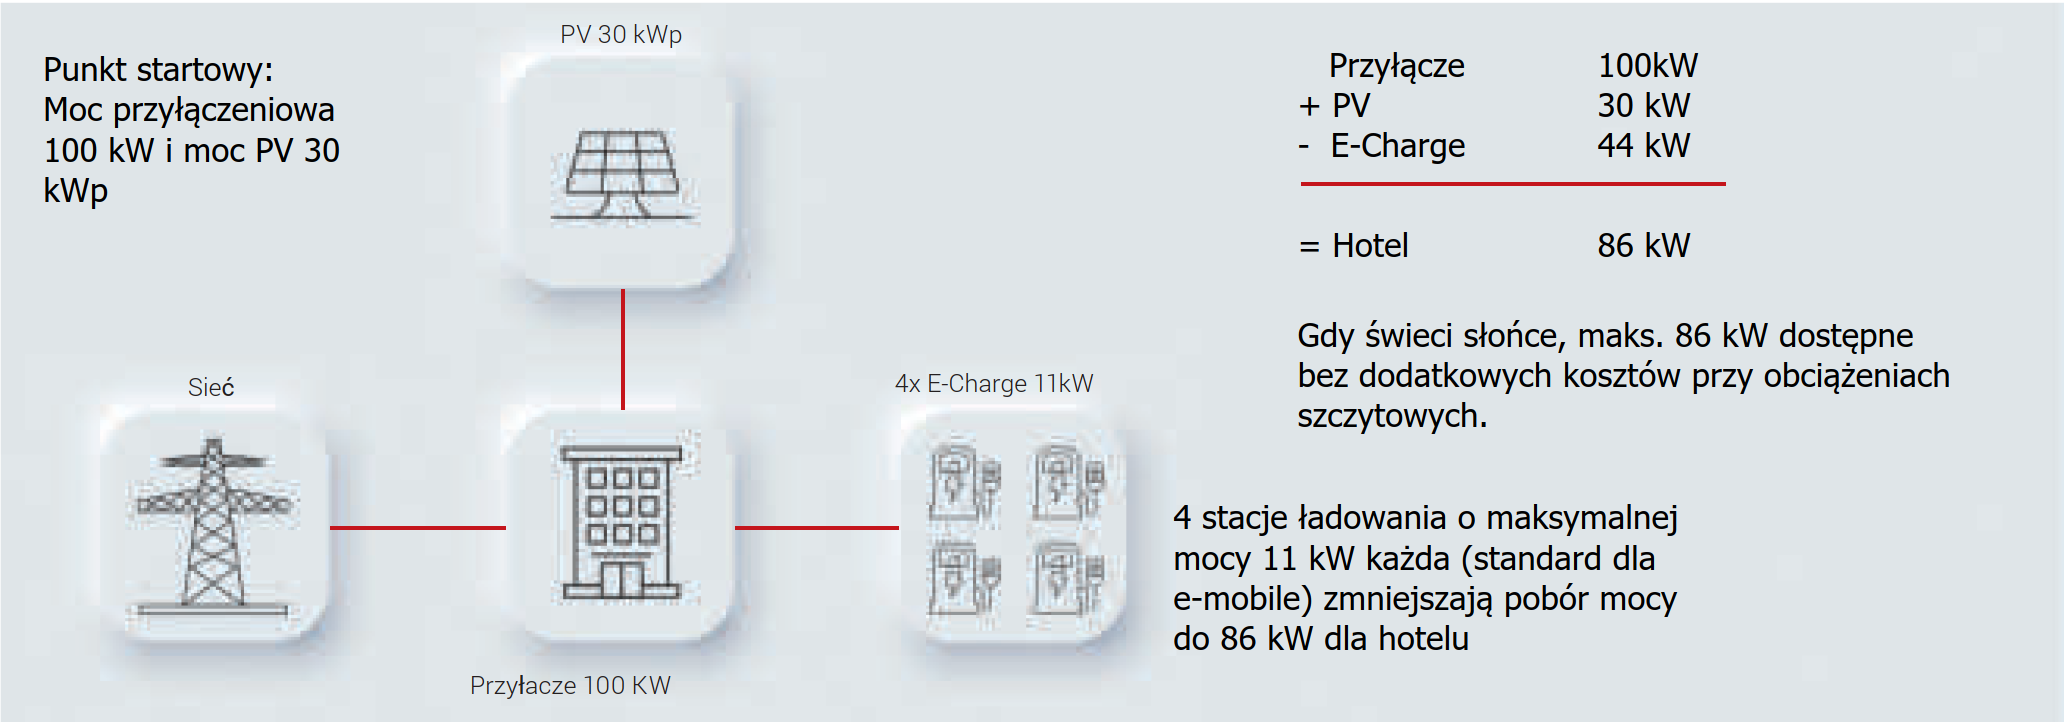 E Charge Stacja ładowania elektrycznego bez dynamicznego zarządzania obciążeniem Vigos